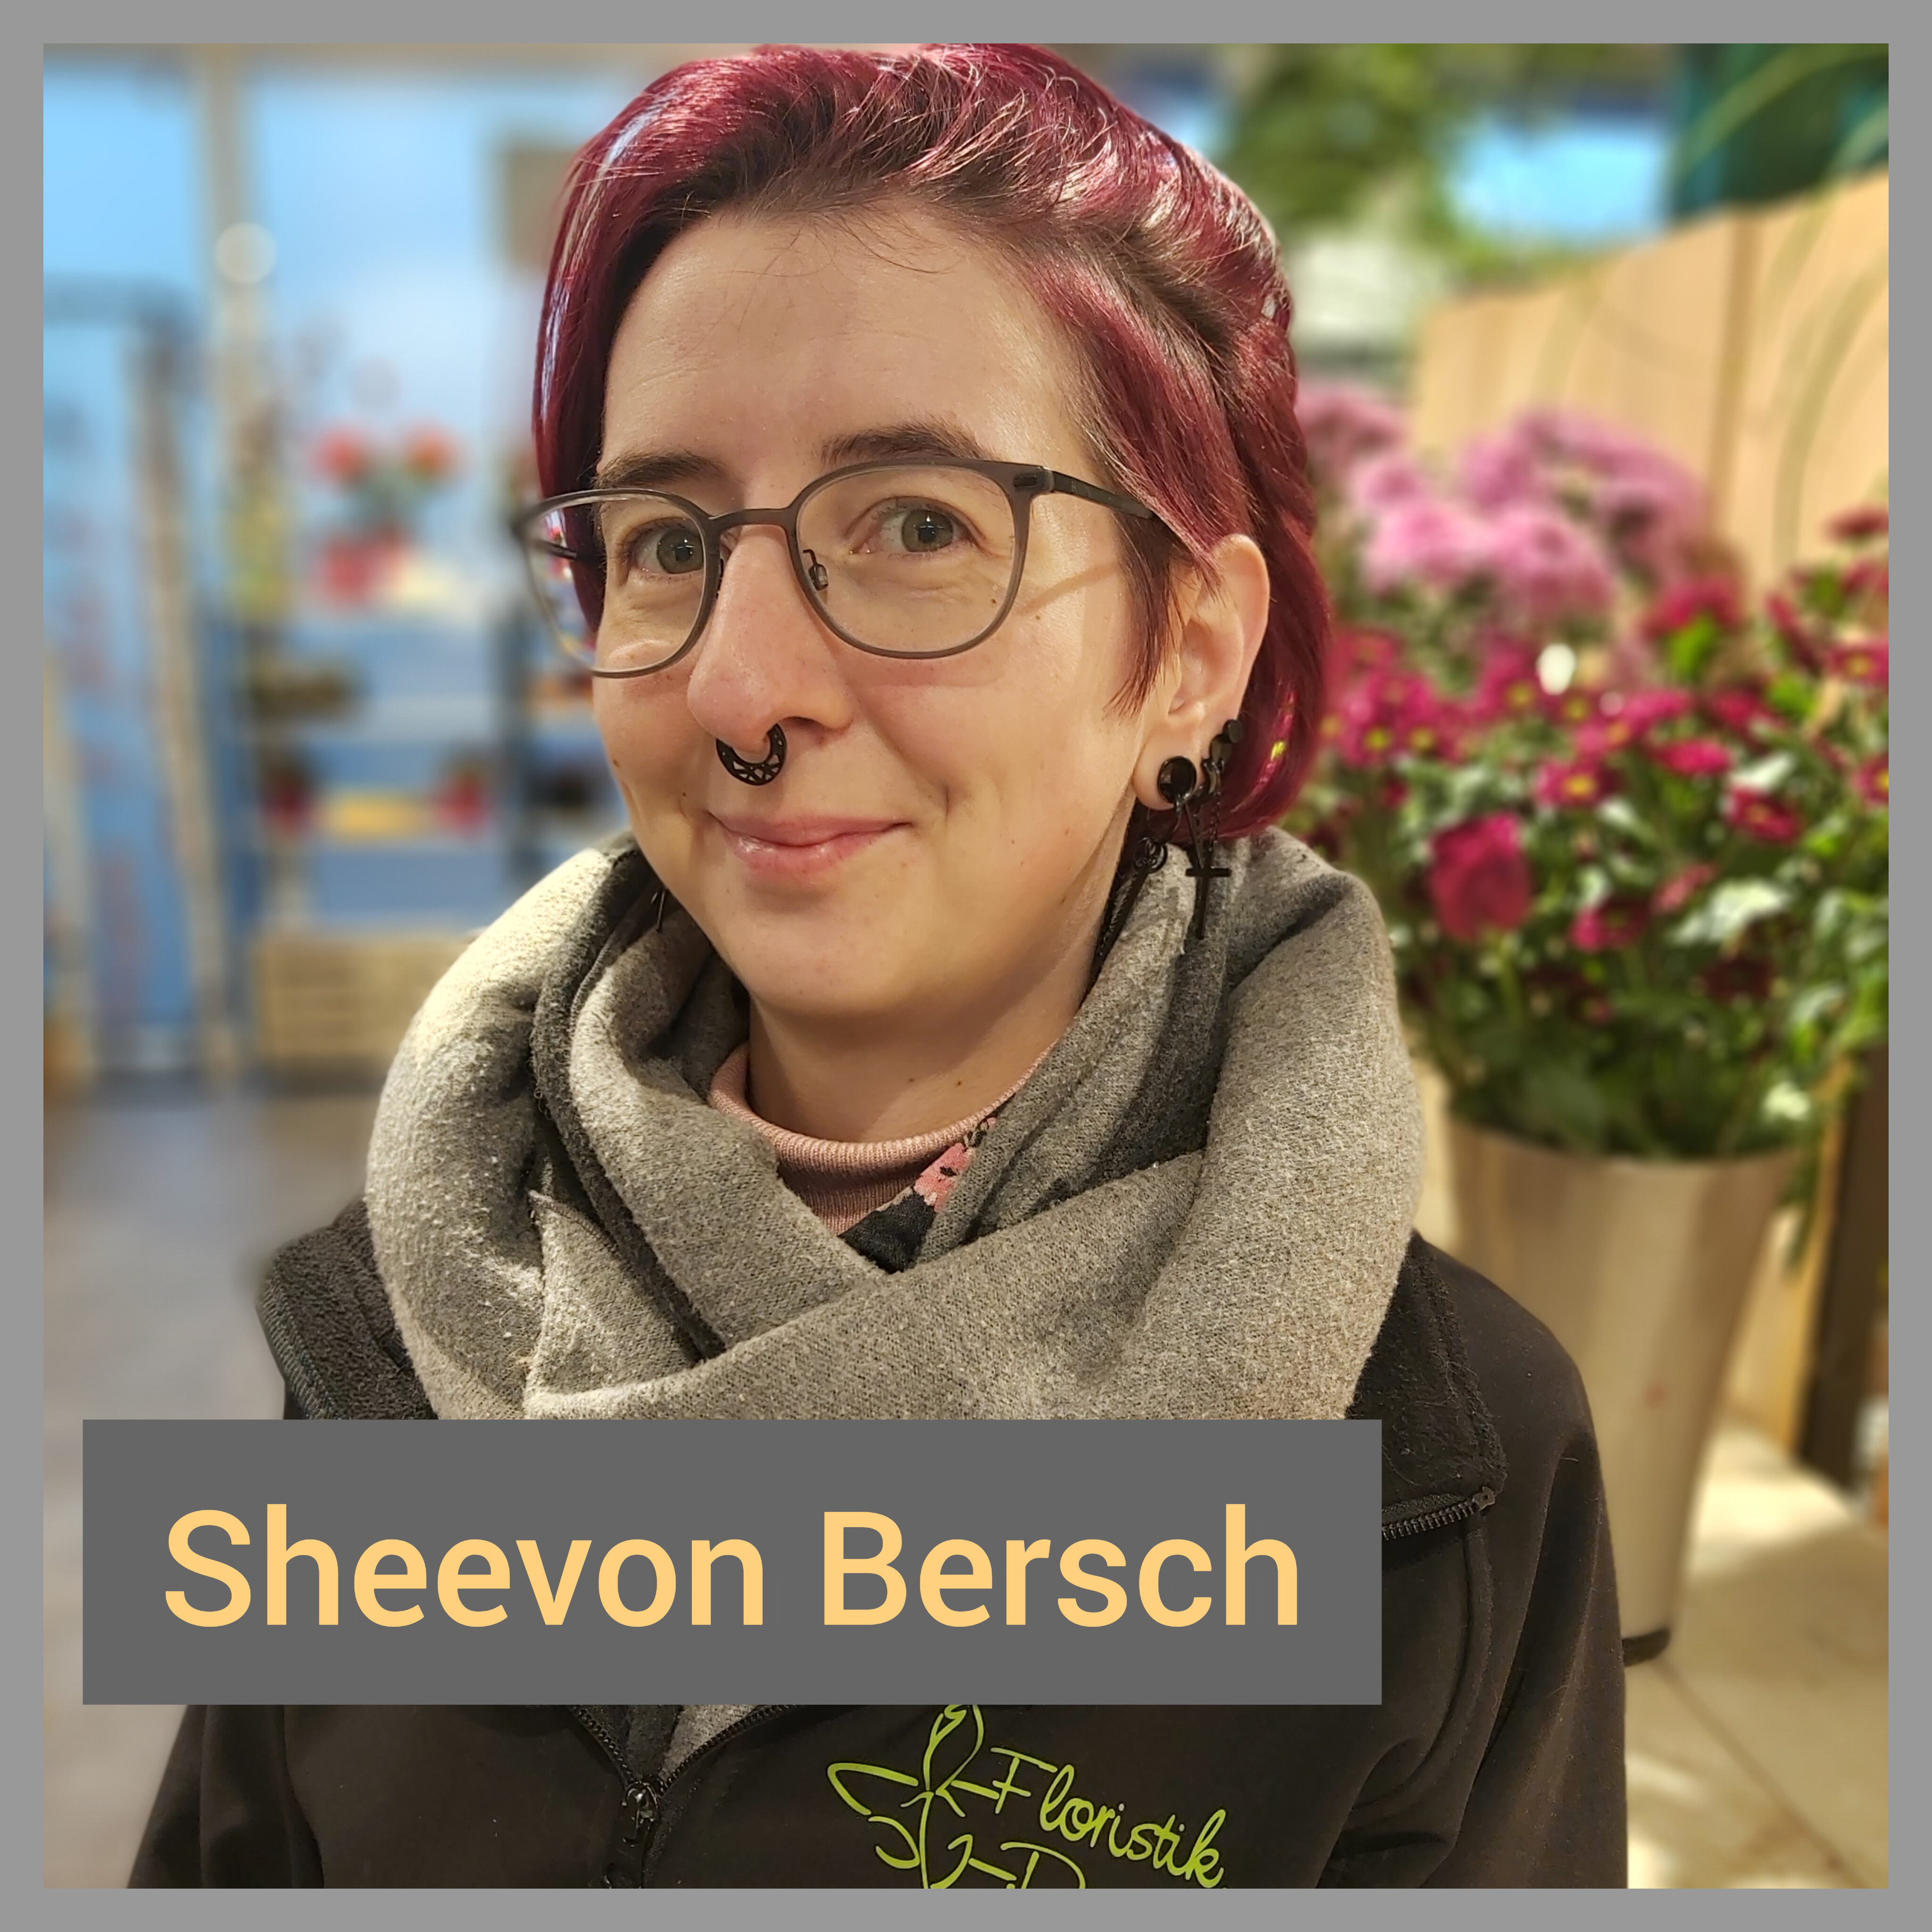 Sheevon Bersch